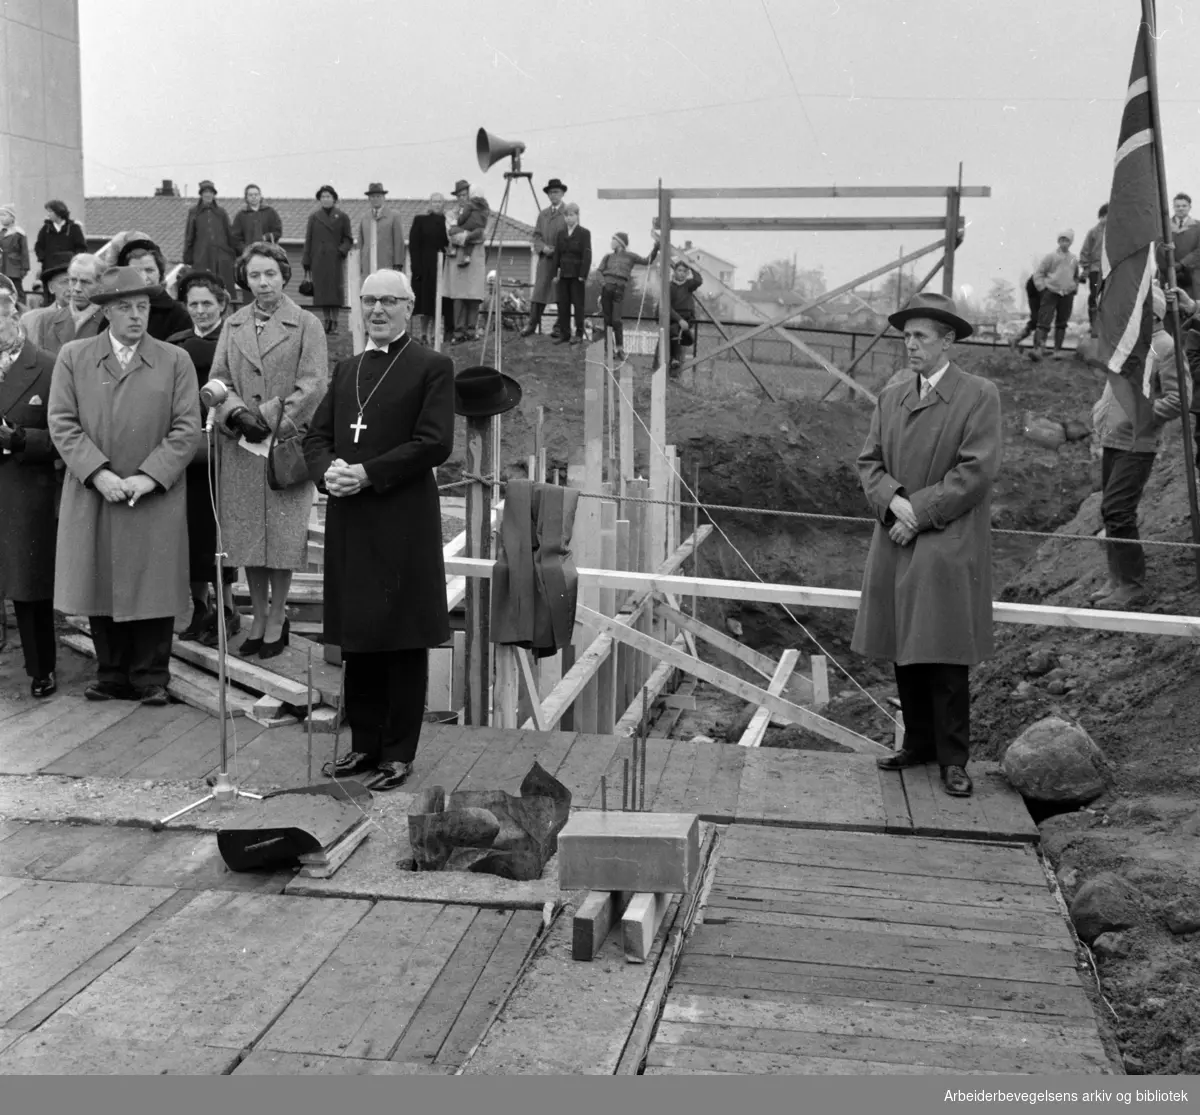 Tonsen kirke. Grunnstensnedleggelse. Biskop Johannes Smemo la ned grunnsteinen. November 1959